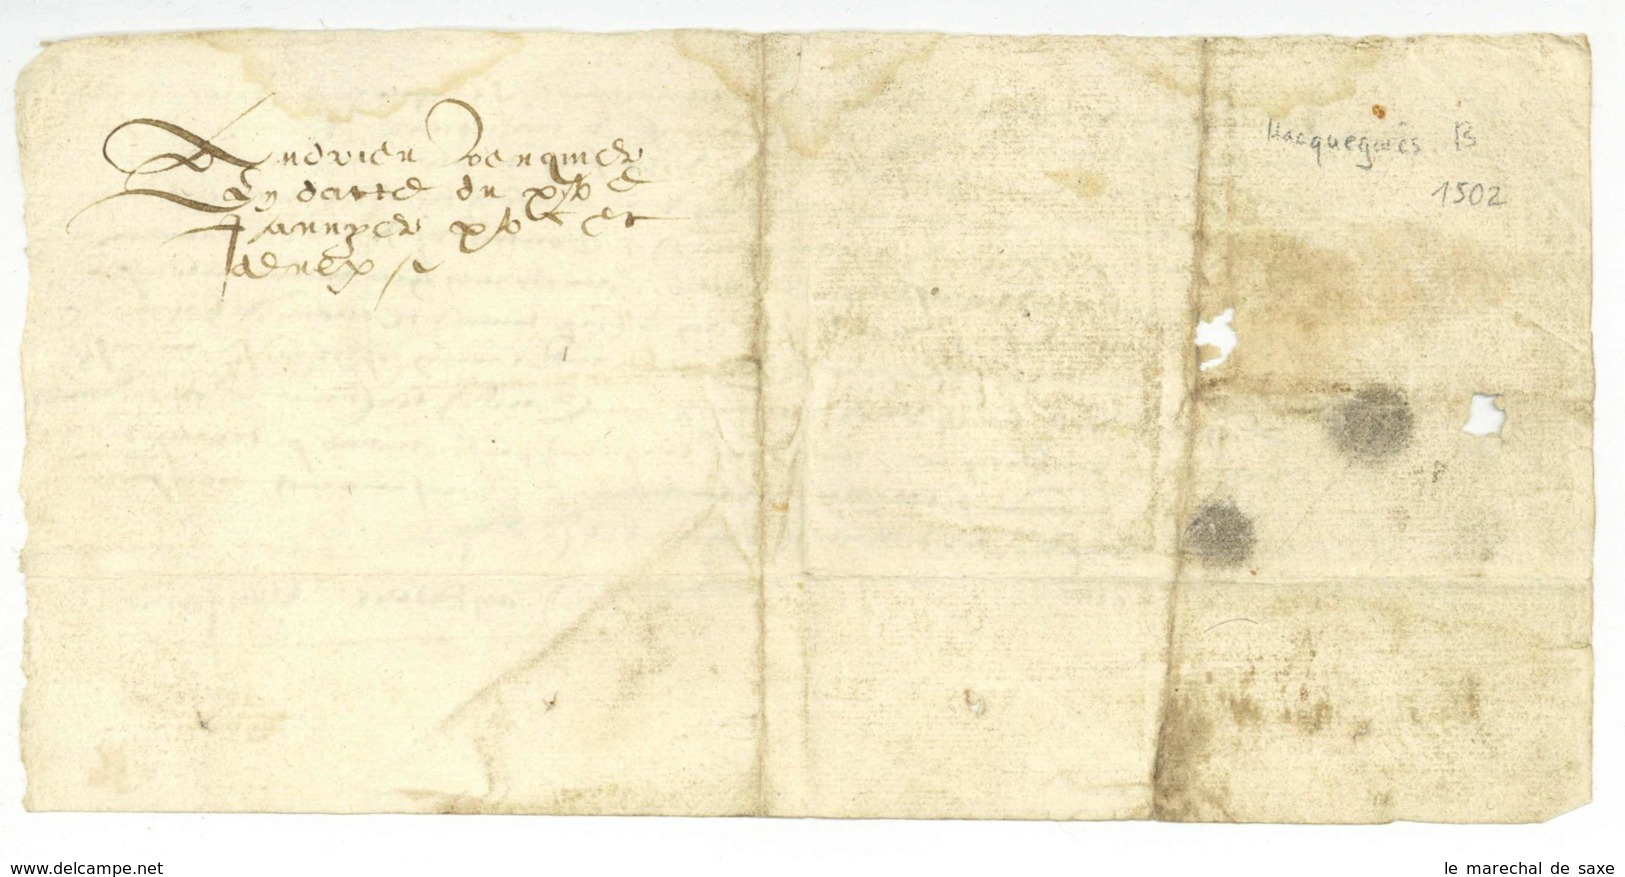 Hacquegnies ATH Belgique 1502 Foy Et Hommage Andrieu Venquiere A M De TRAZEGNIES - Manuscrits